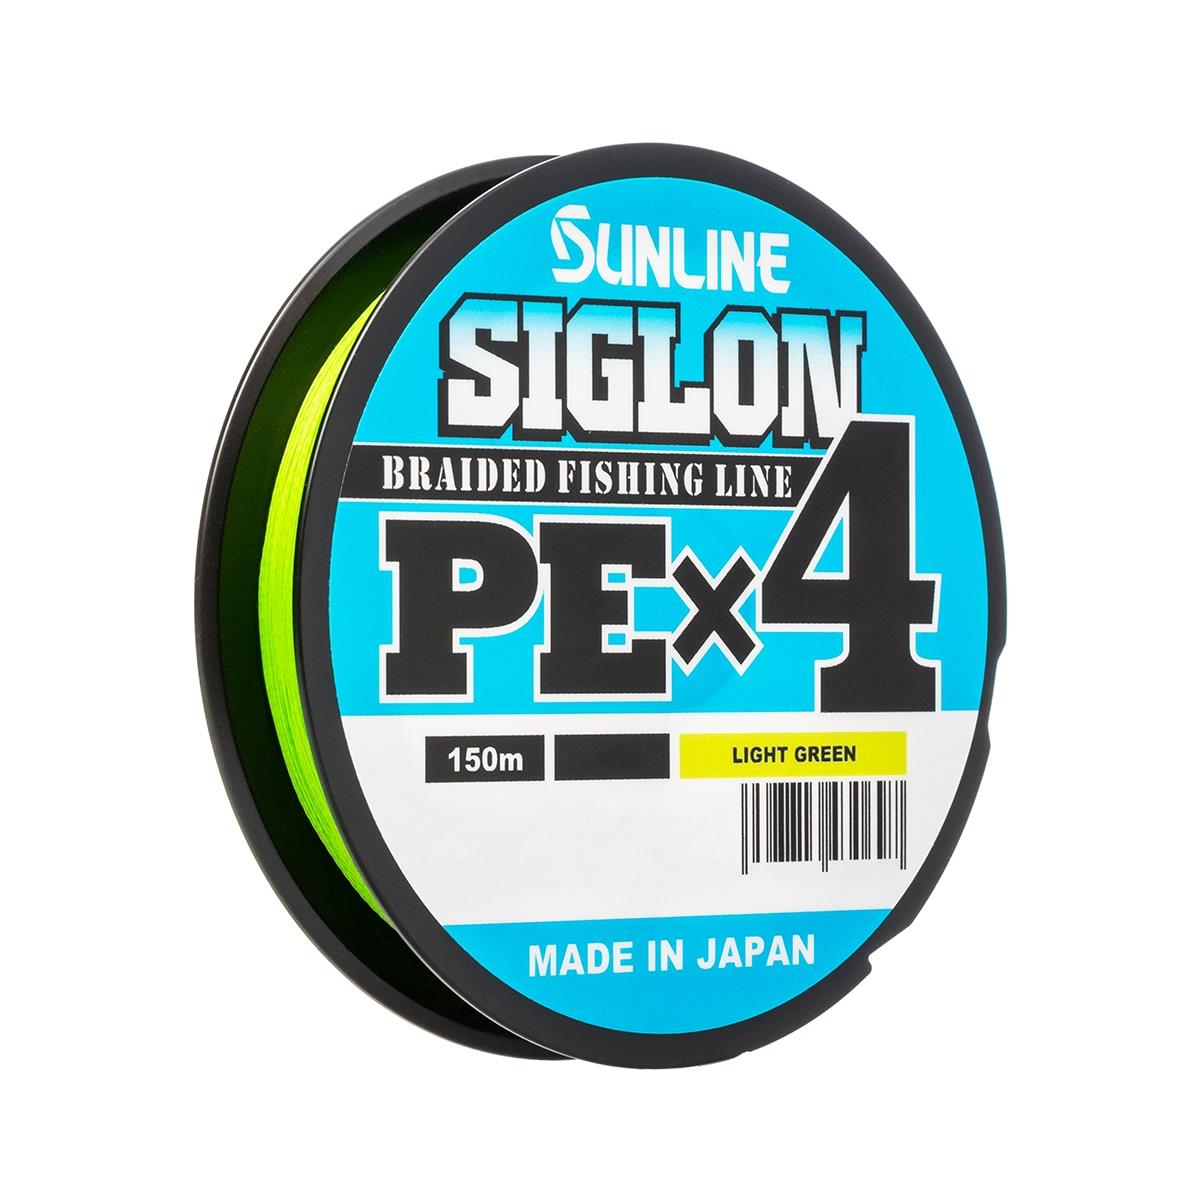 Шнур SIGLON PE×4 150 м (Light green) Sunline крученый полиамидный шнур стройбат